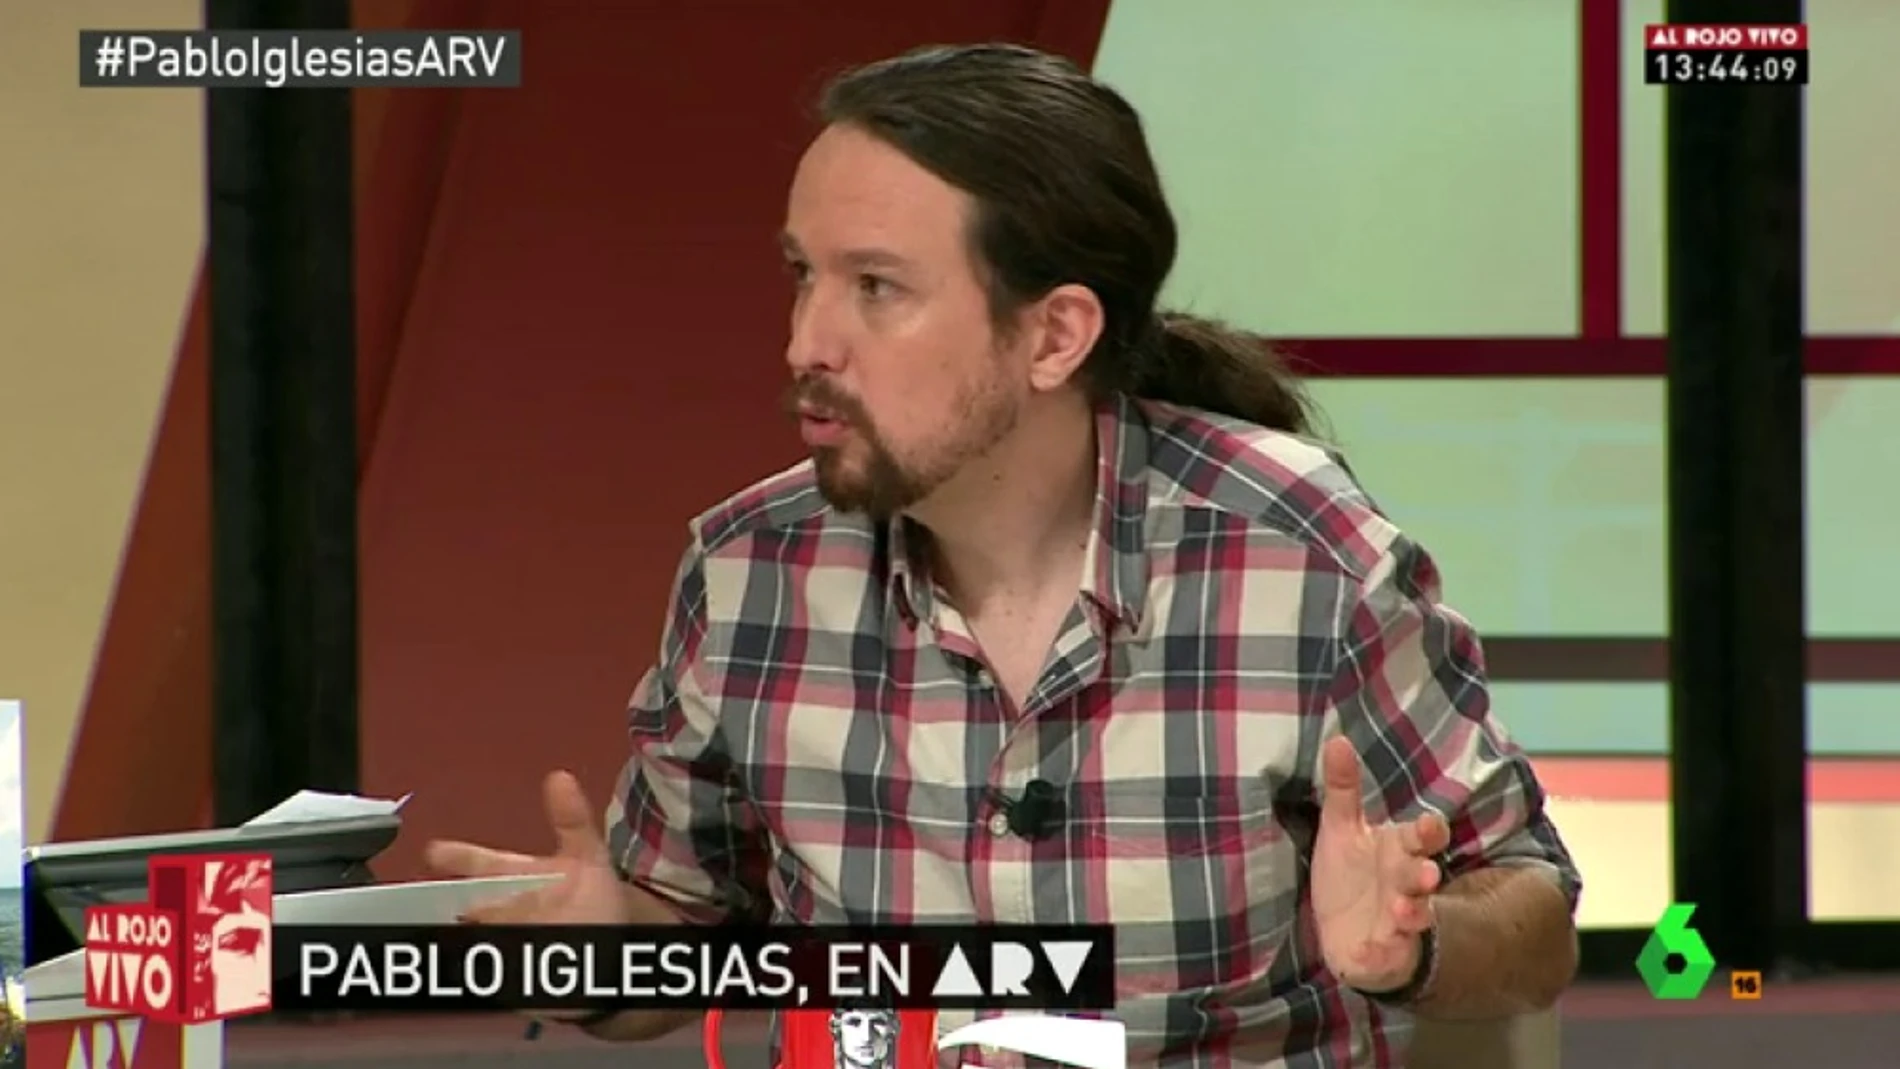 Pablo Iglesias, durante su intervención en “Al Rjo Vivo”, en La Sexta